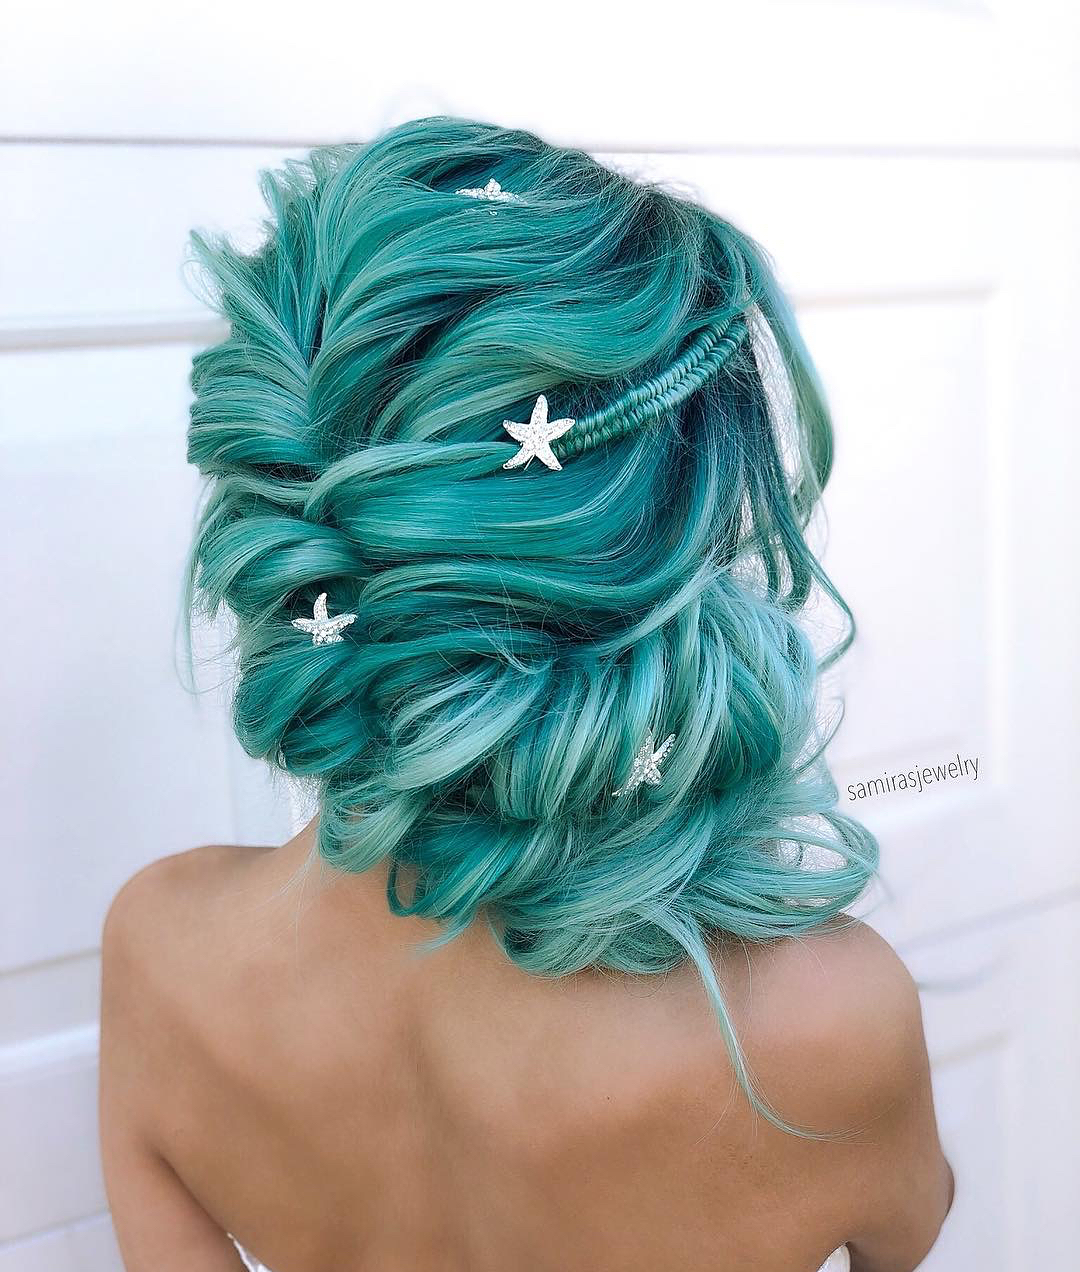 Acconciature capelli verdi - Instagram: @therighthairstyles